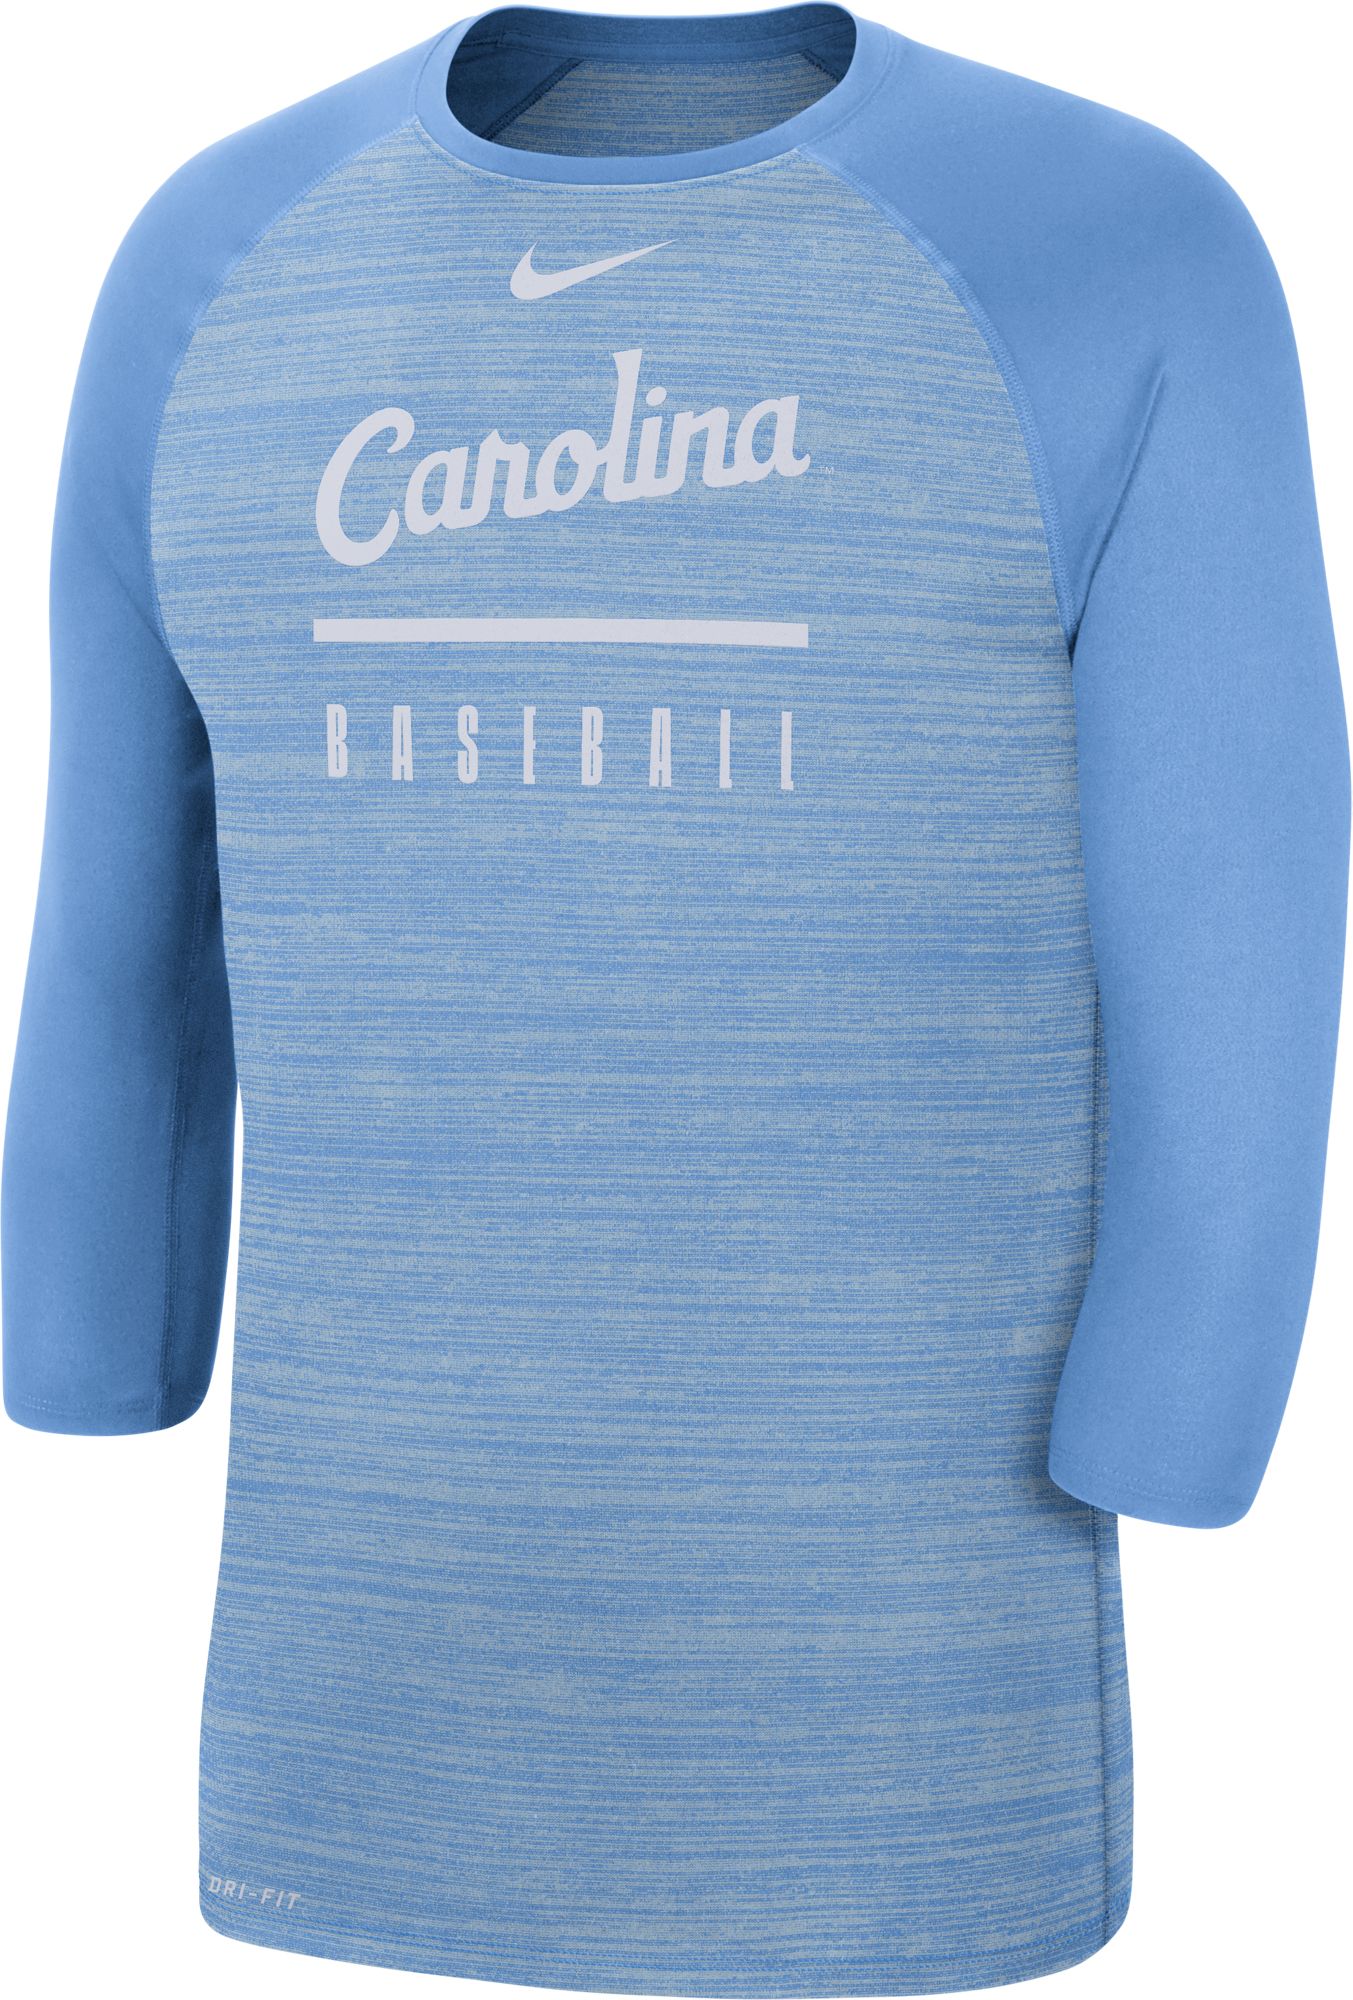 carolina blue nike shirt